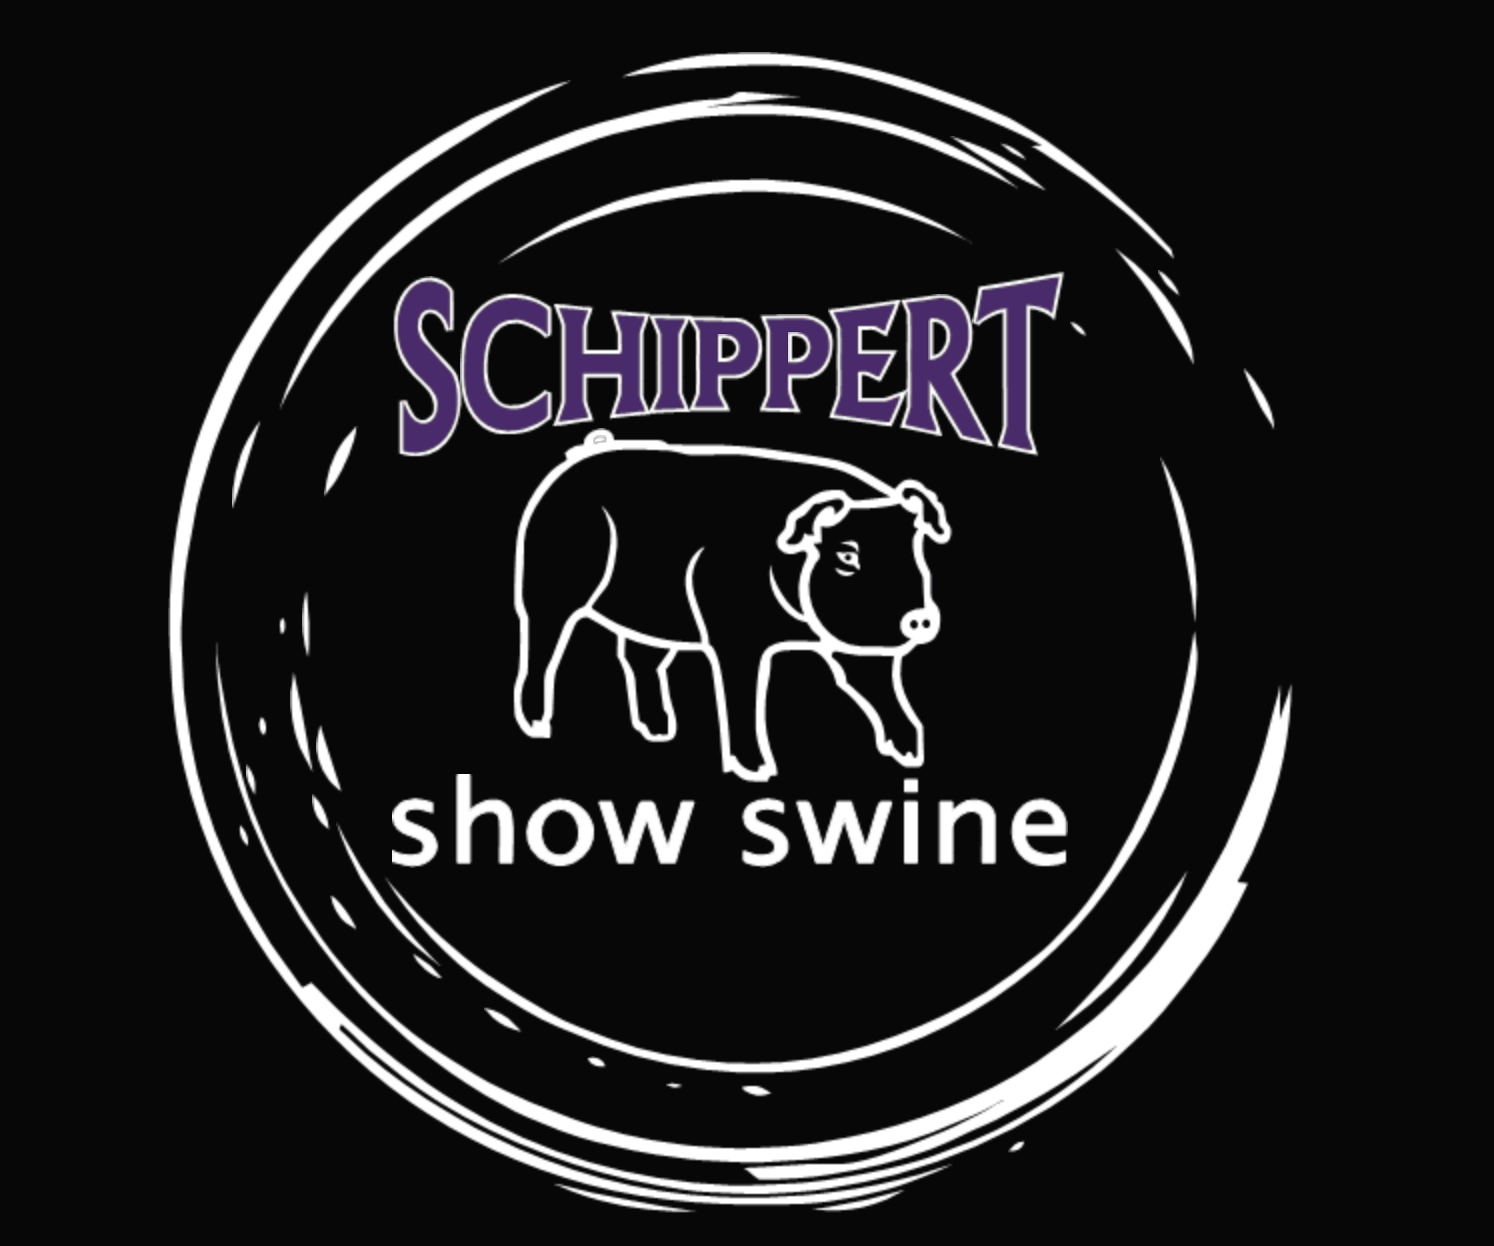 Schippert Show Swine